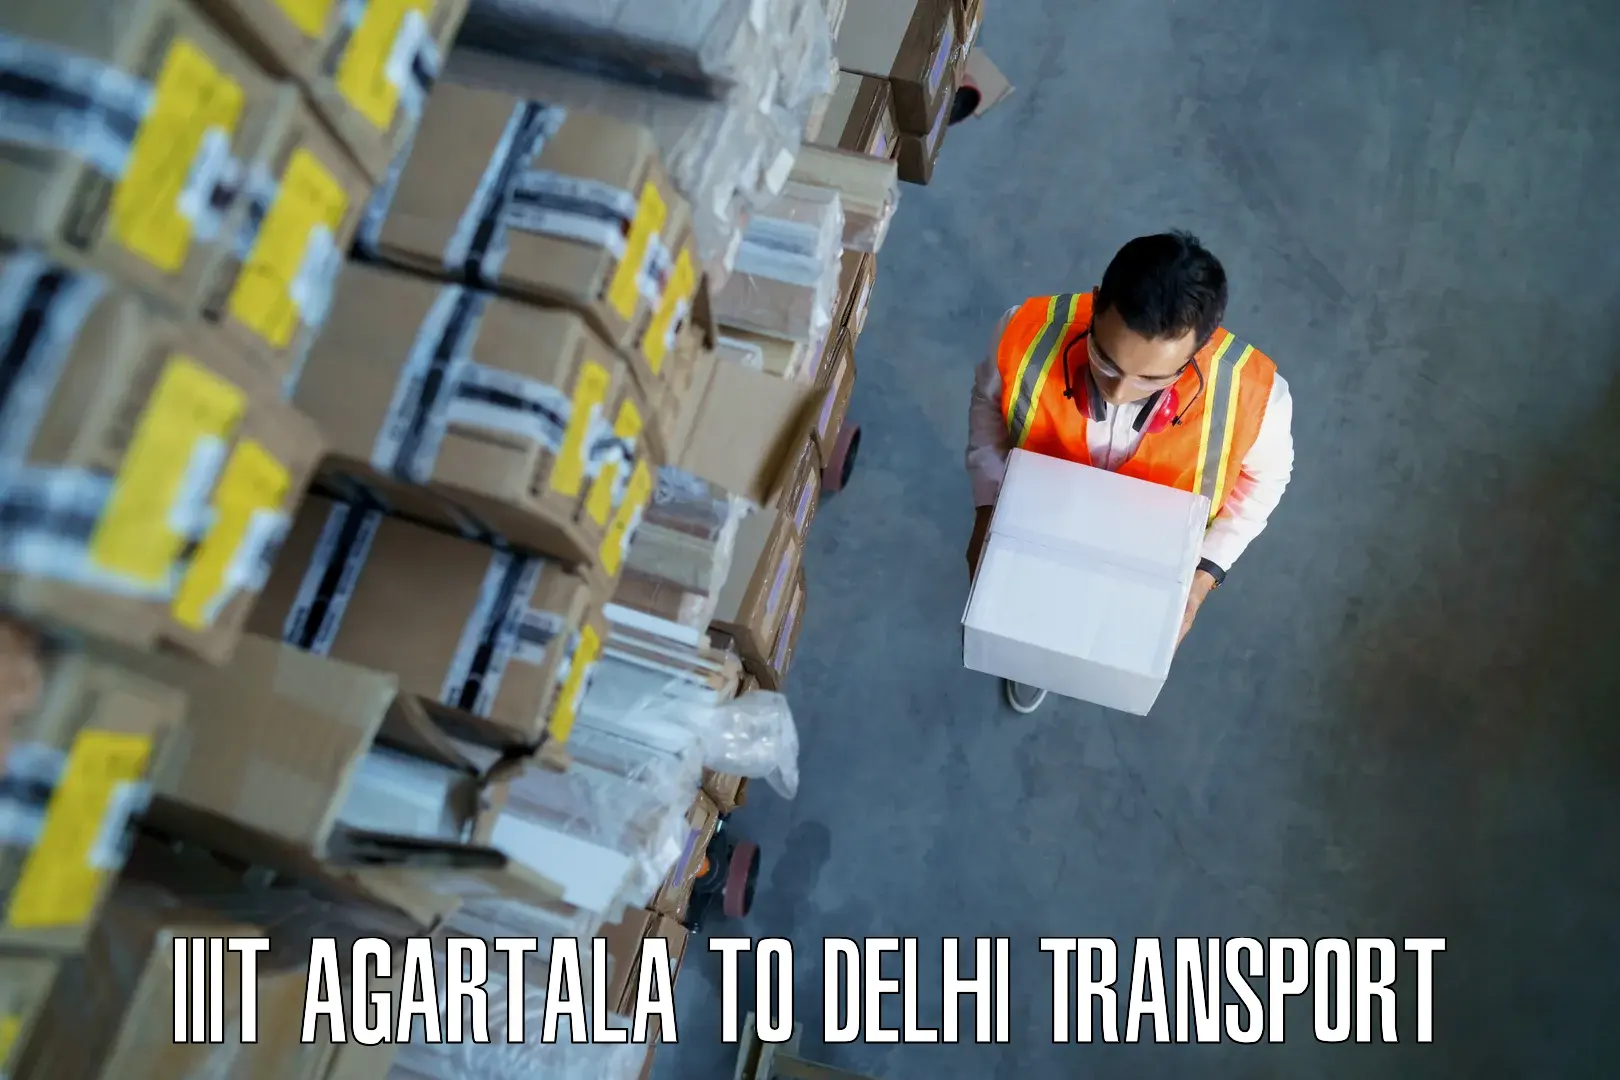 Delivery service IIIT Agartala to Krishna Nagar